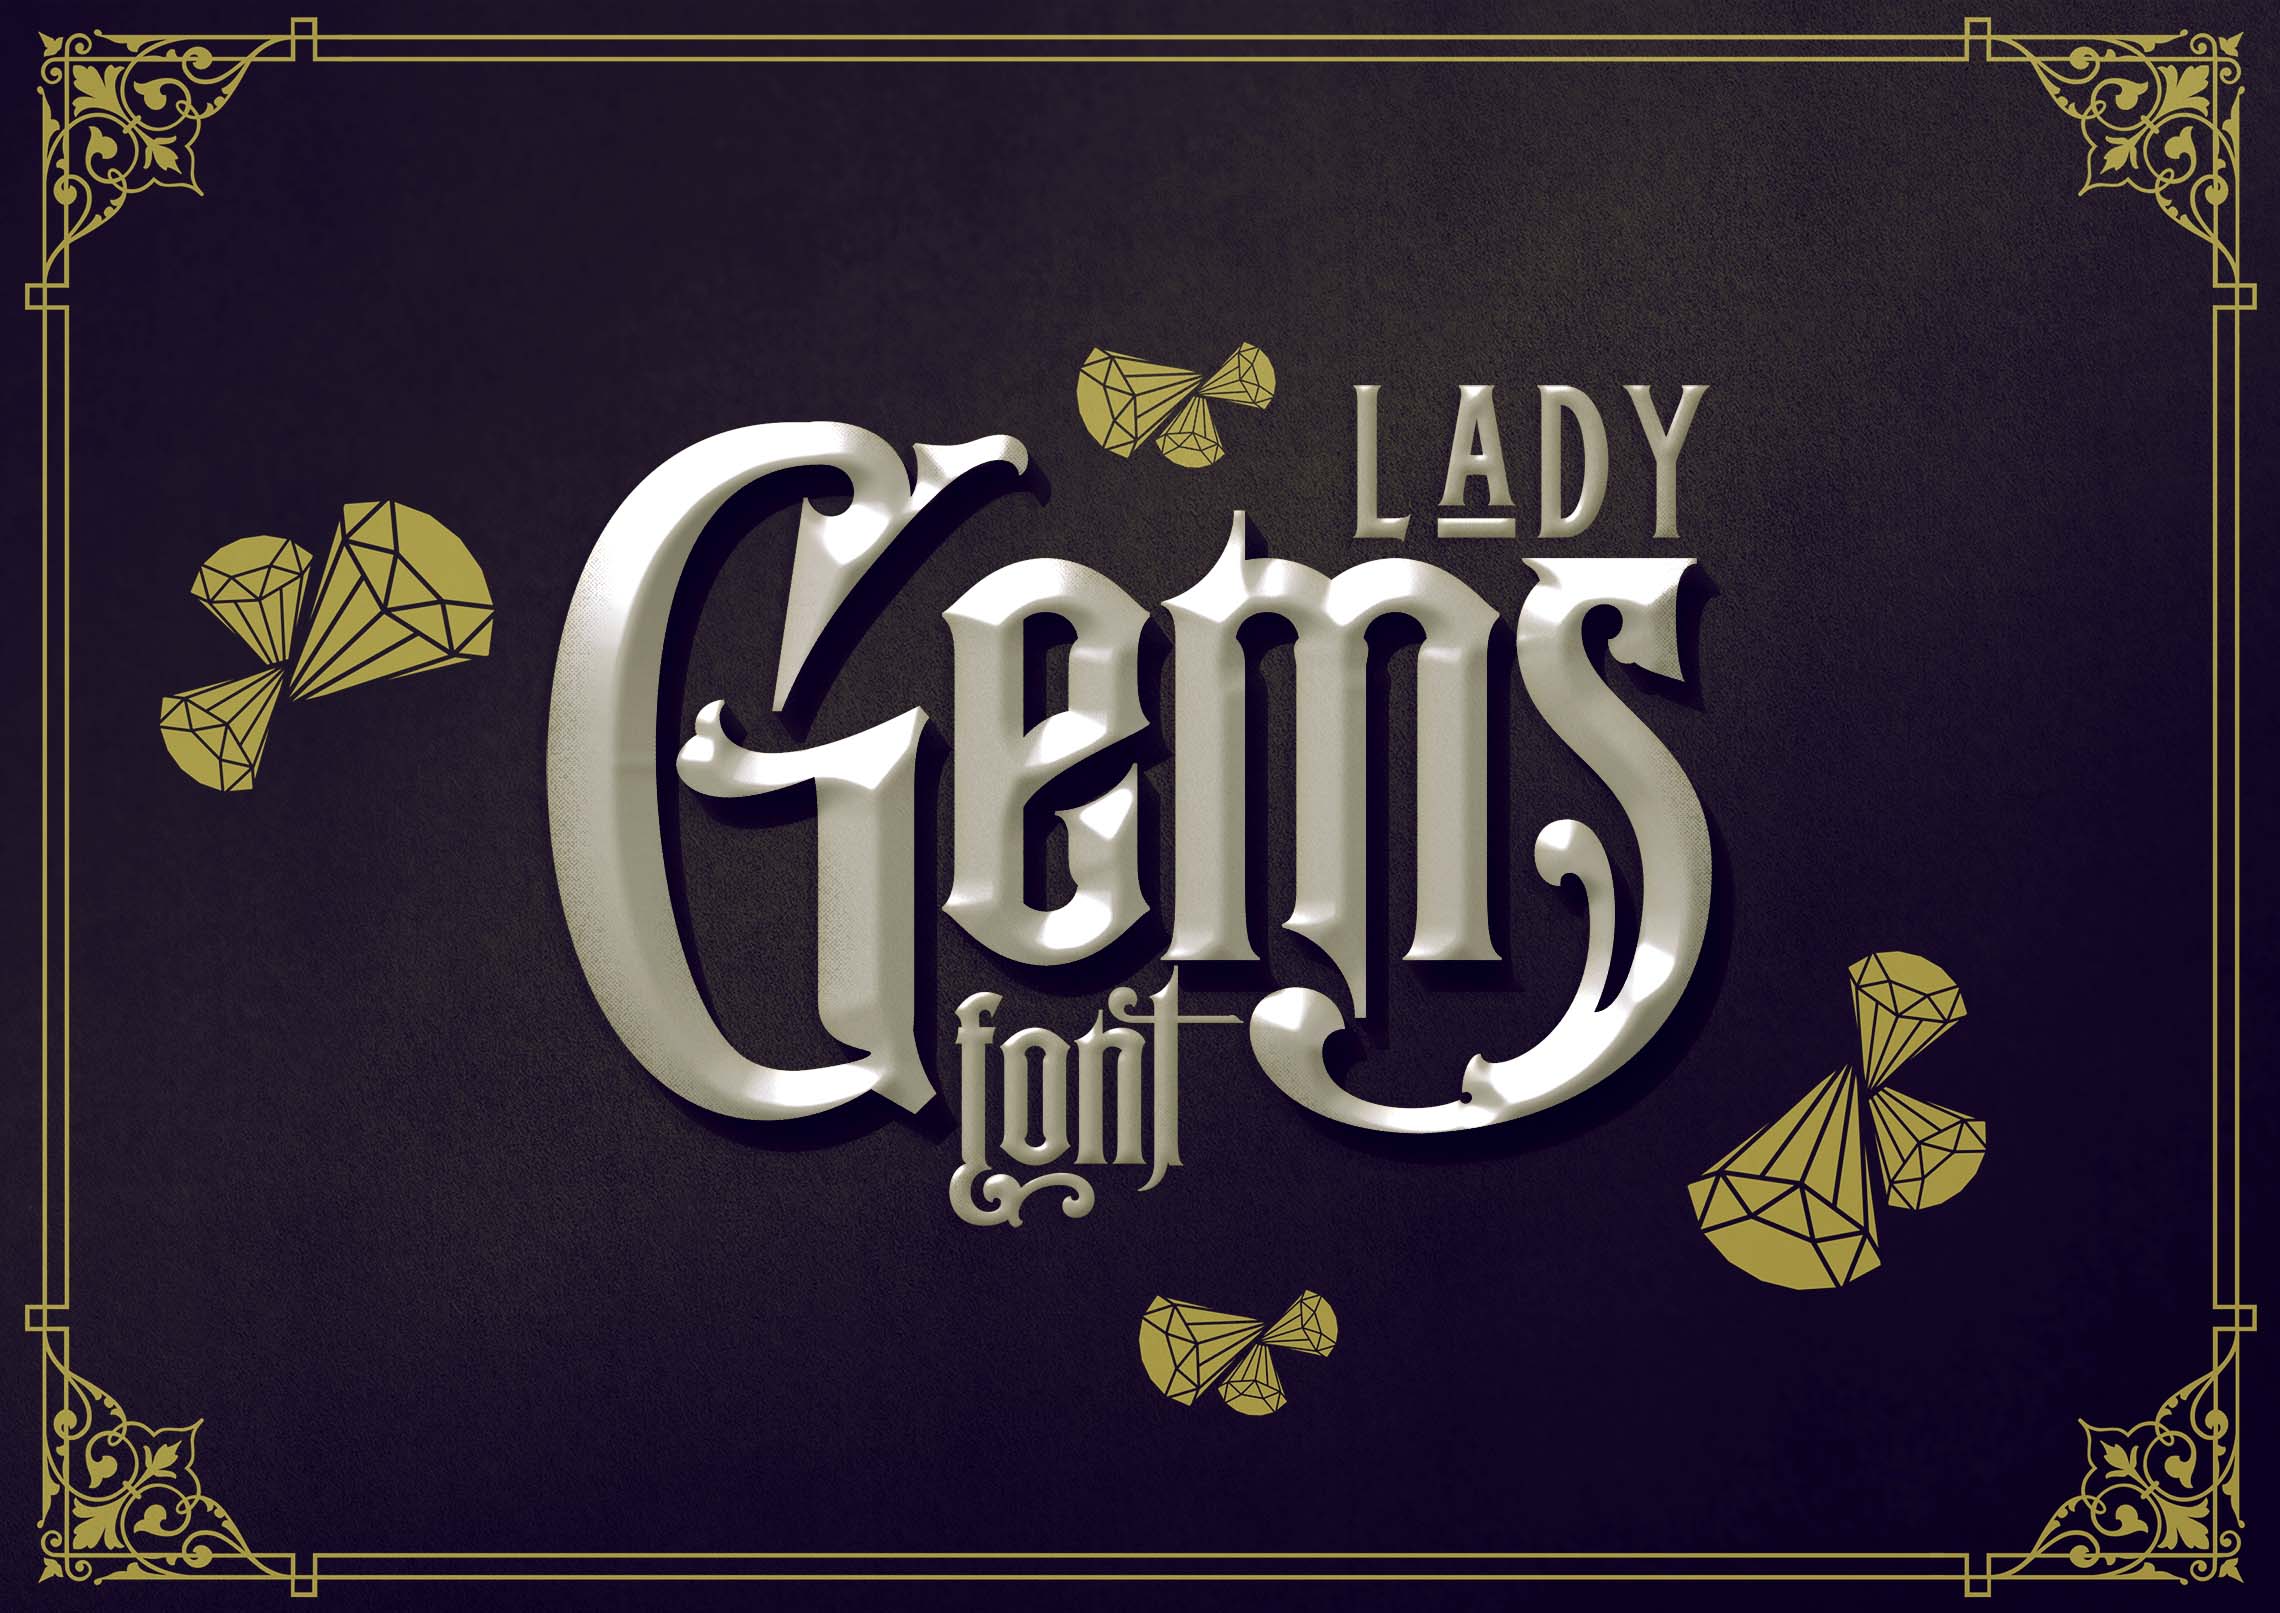 Lady Gems